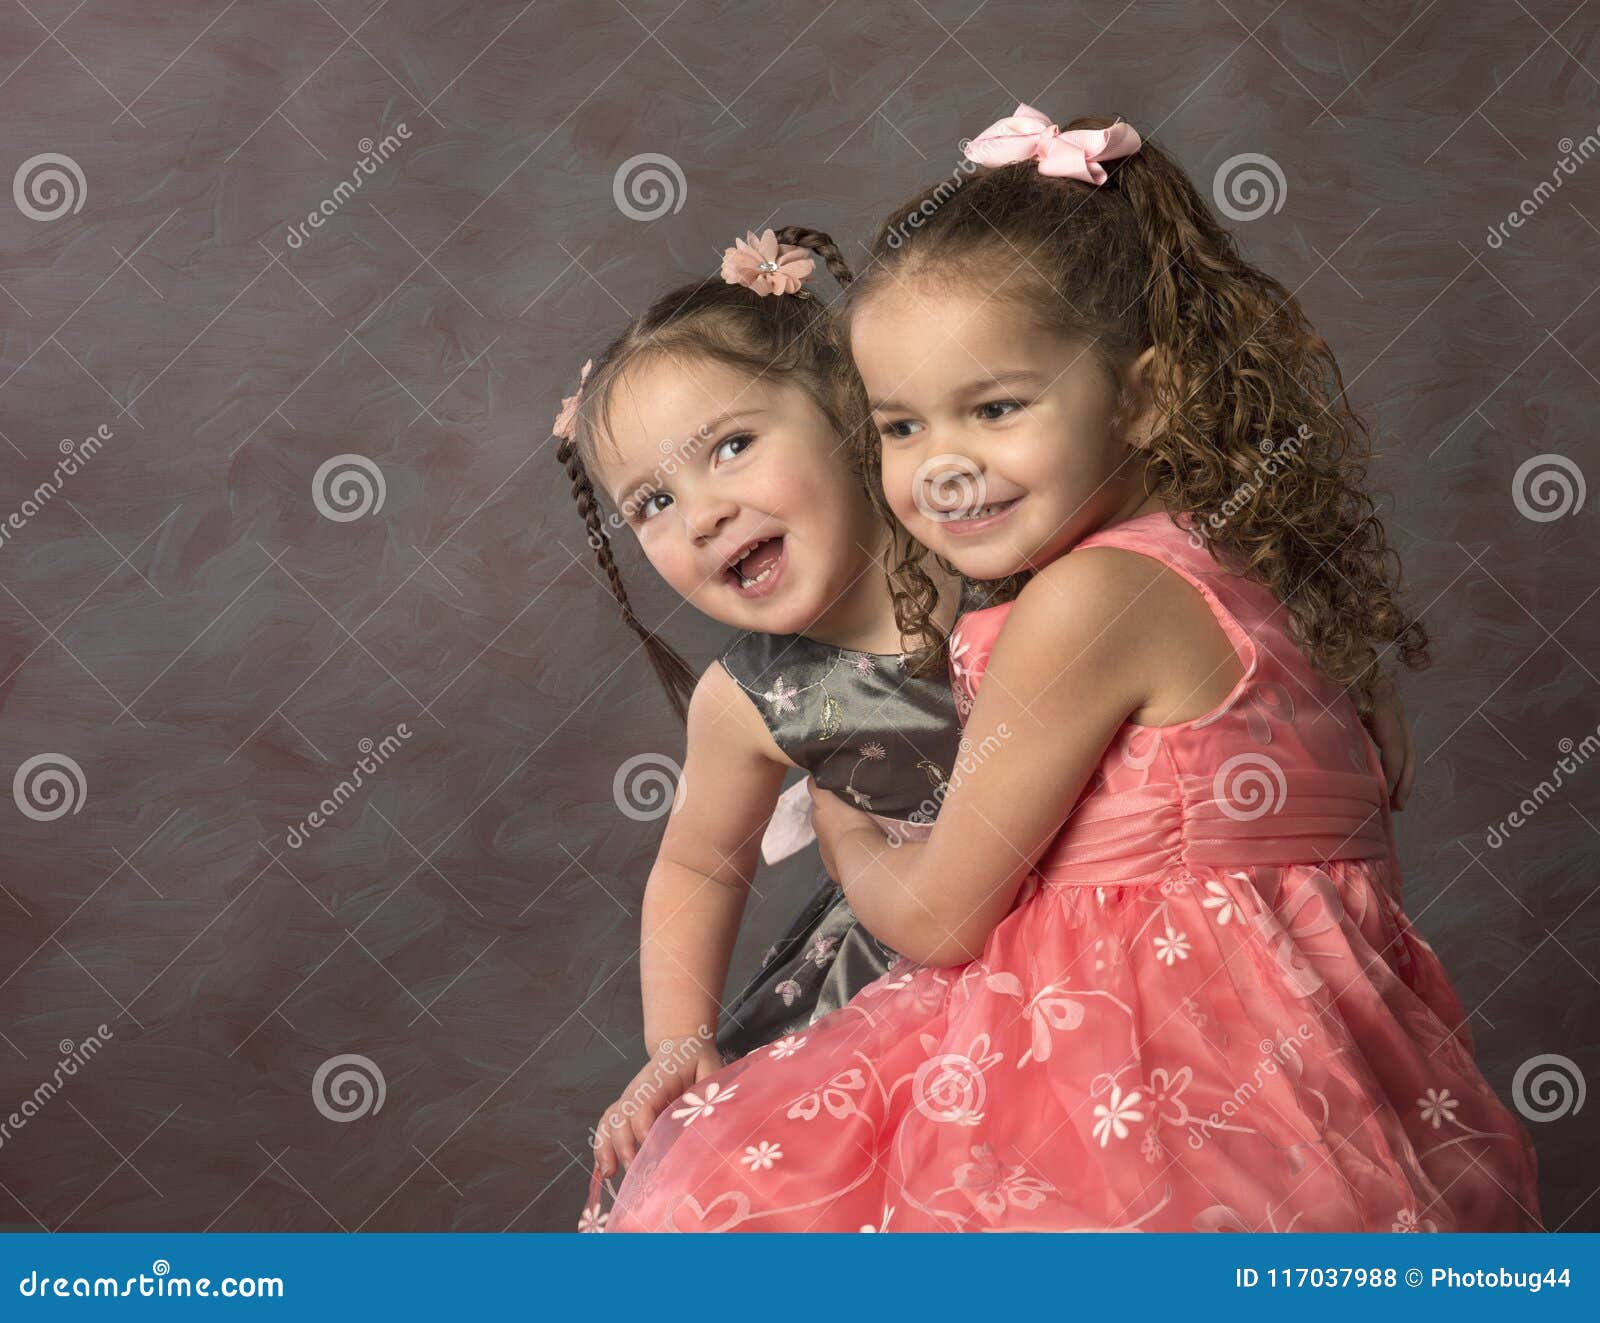 壁纸1400×1050黑白儿童摄影 卷发小女孩图片壁纸壁纸,爱与纯真-可爱婴儿儿童摄影壁纸壁纸图片-摄影壁纸-摄影图片素材-桌面壁纸